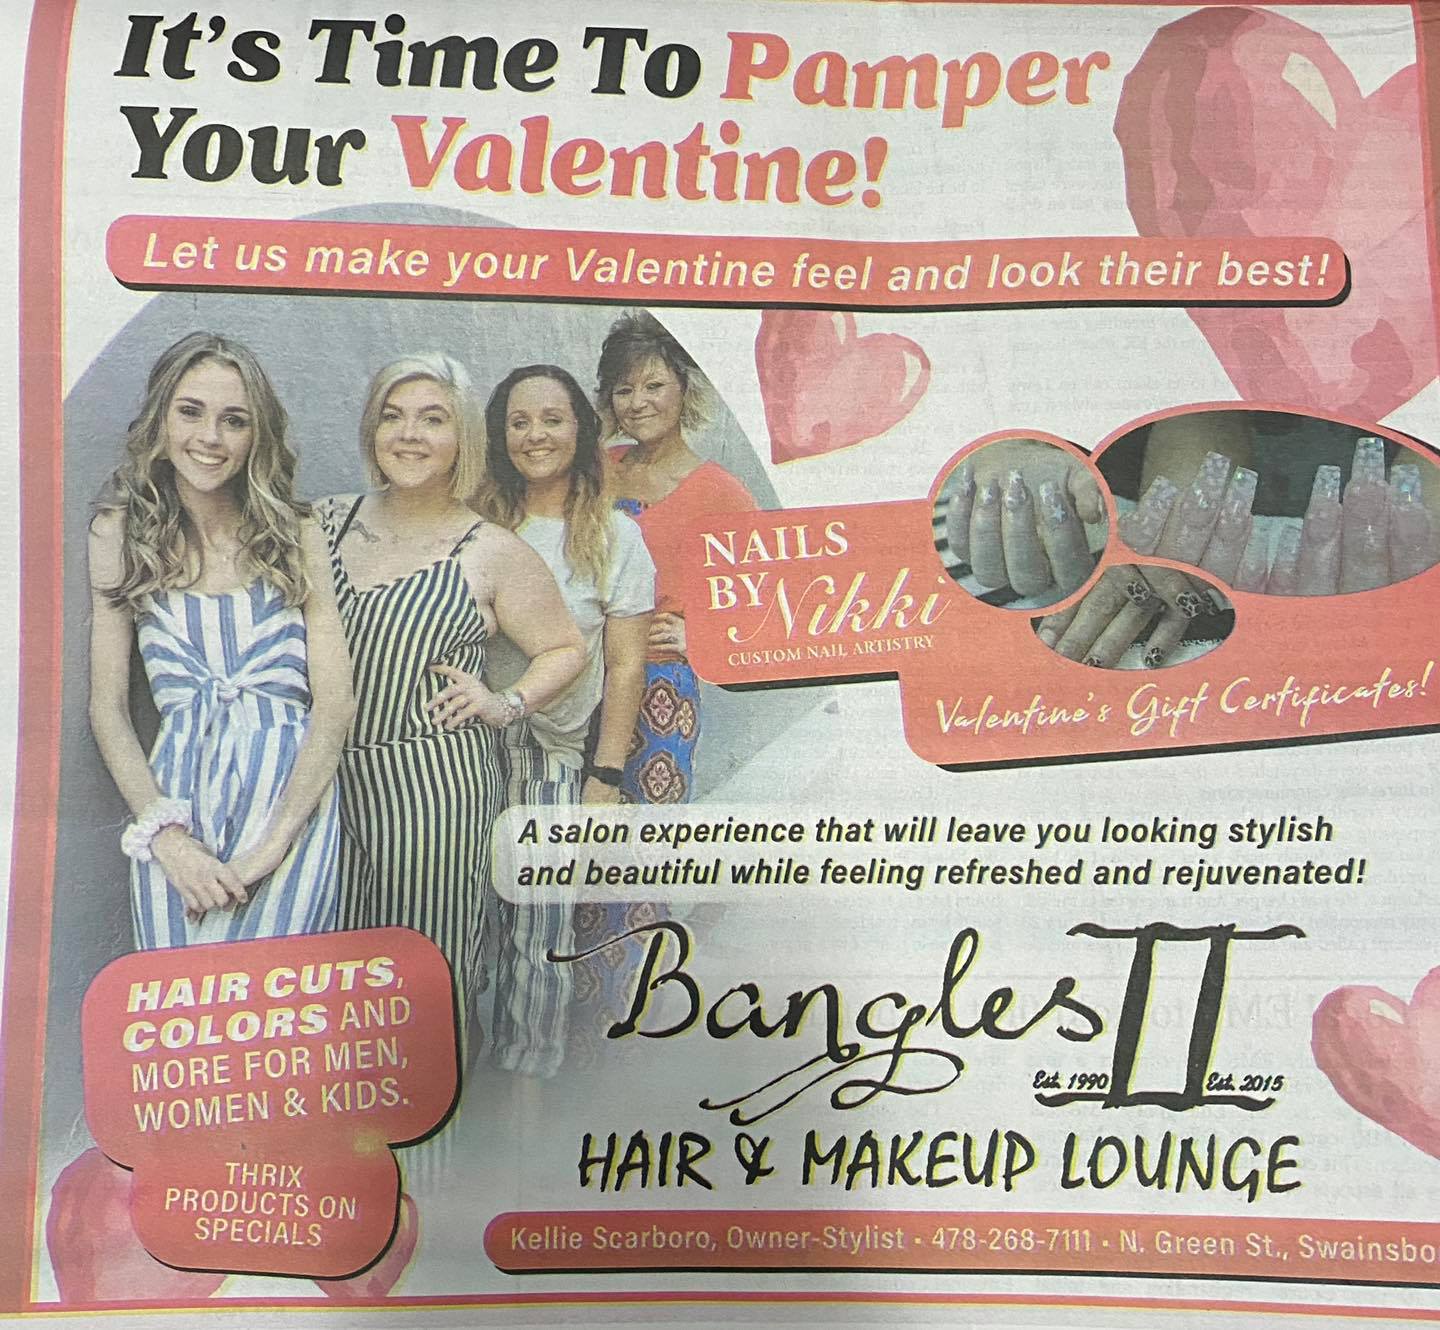 Bangles II Hair and Makeup Lounge 111 N Green St, Swainsboro Georgia 30401